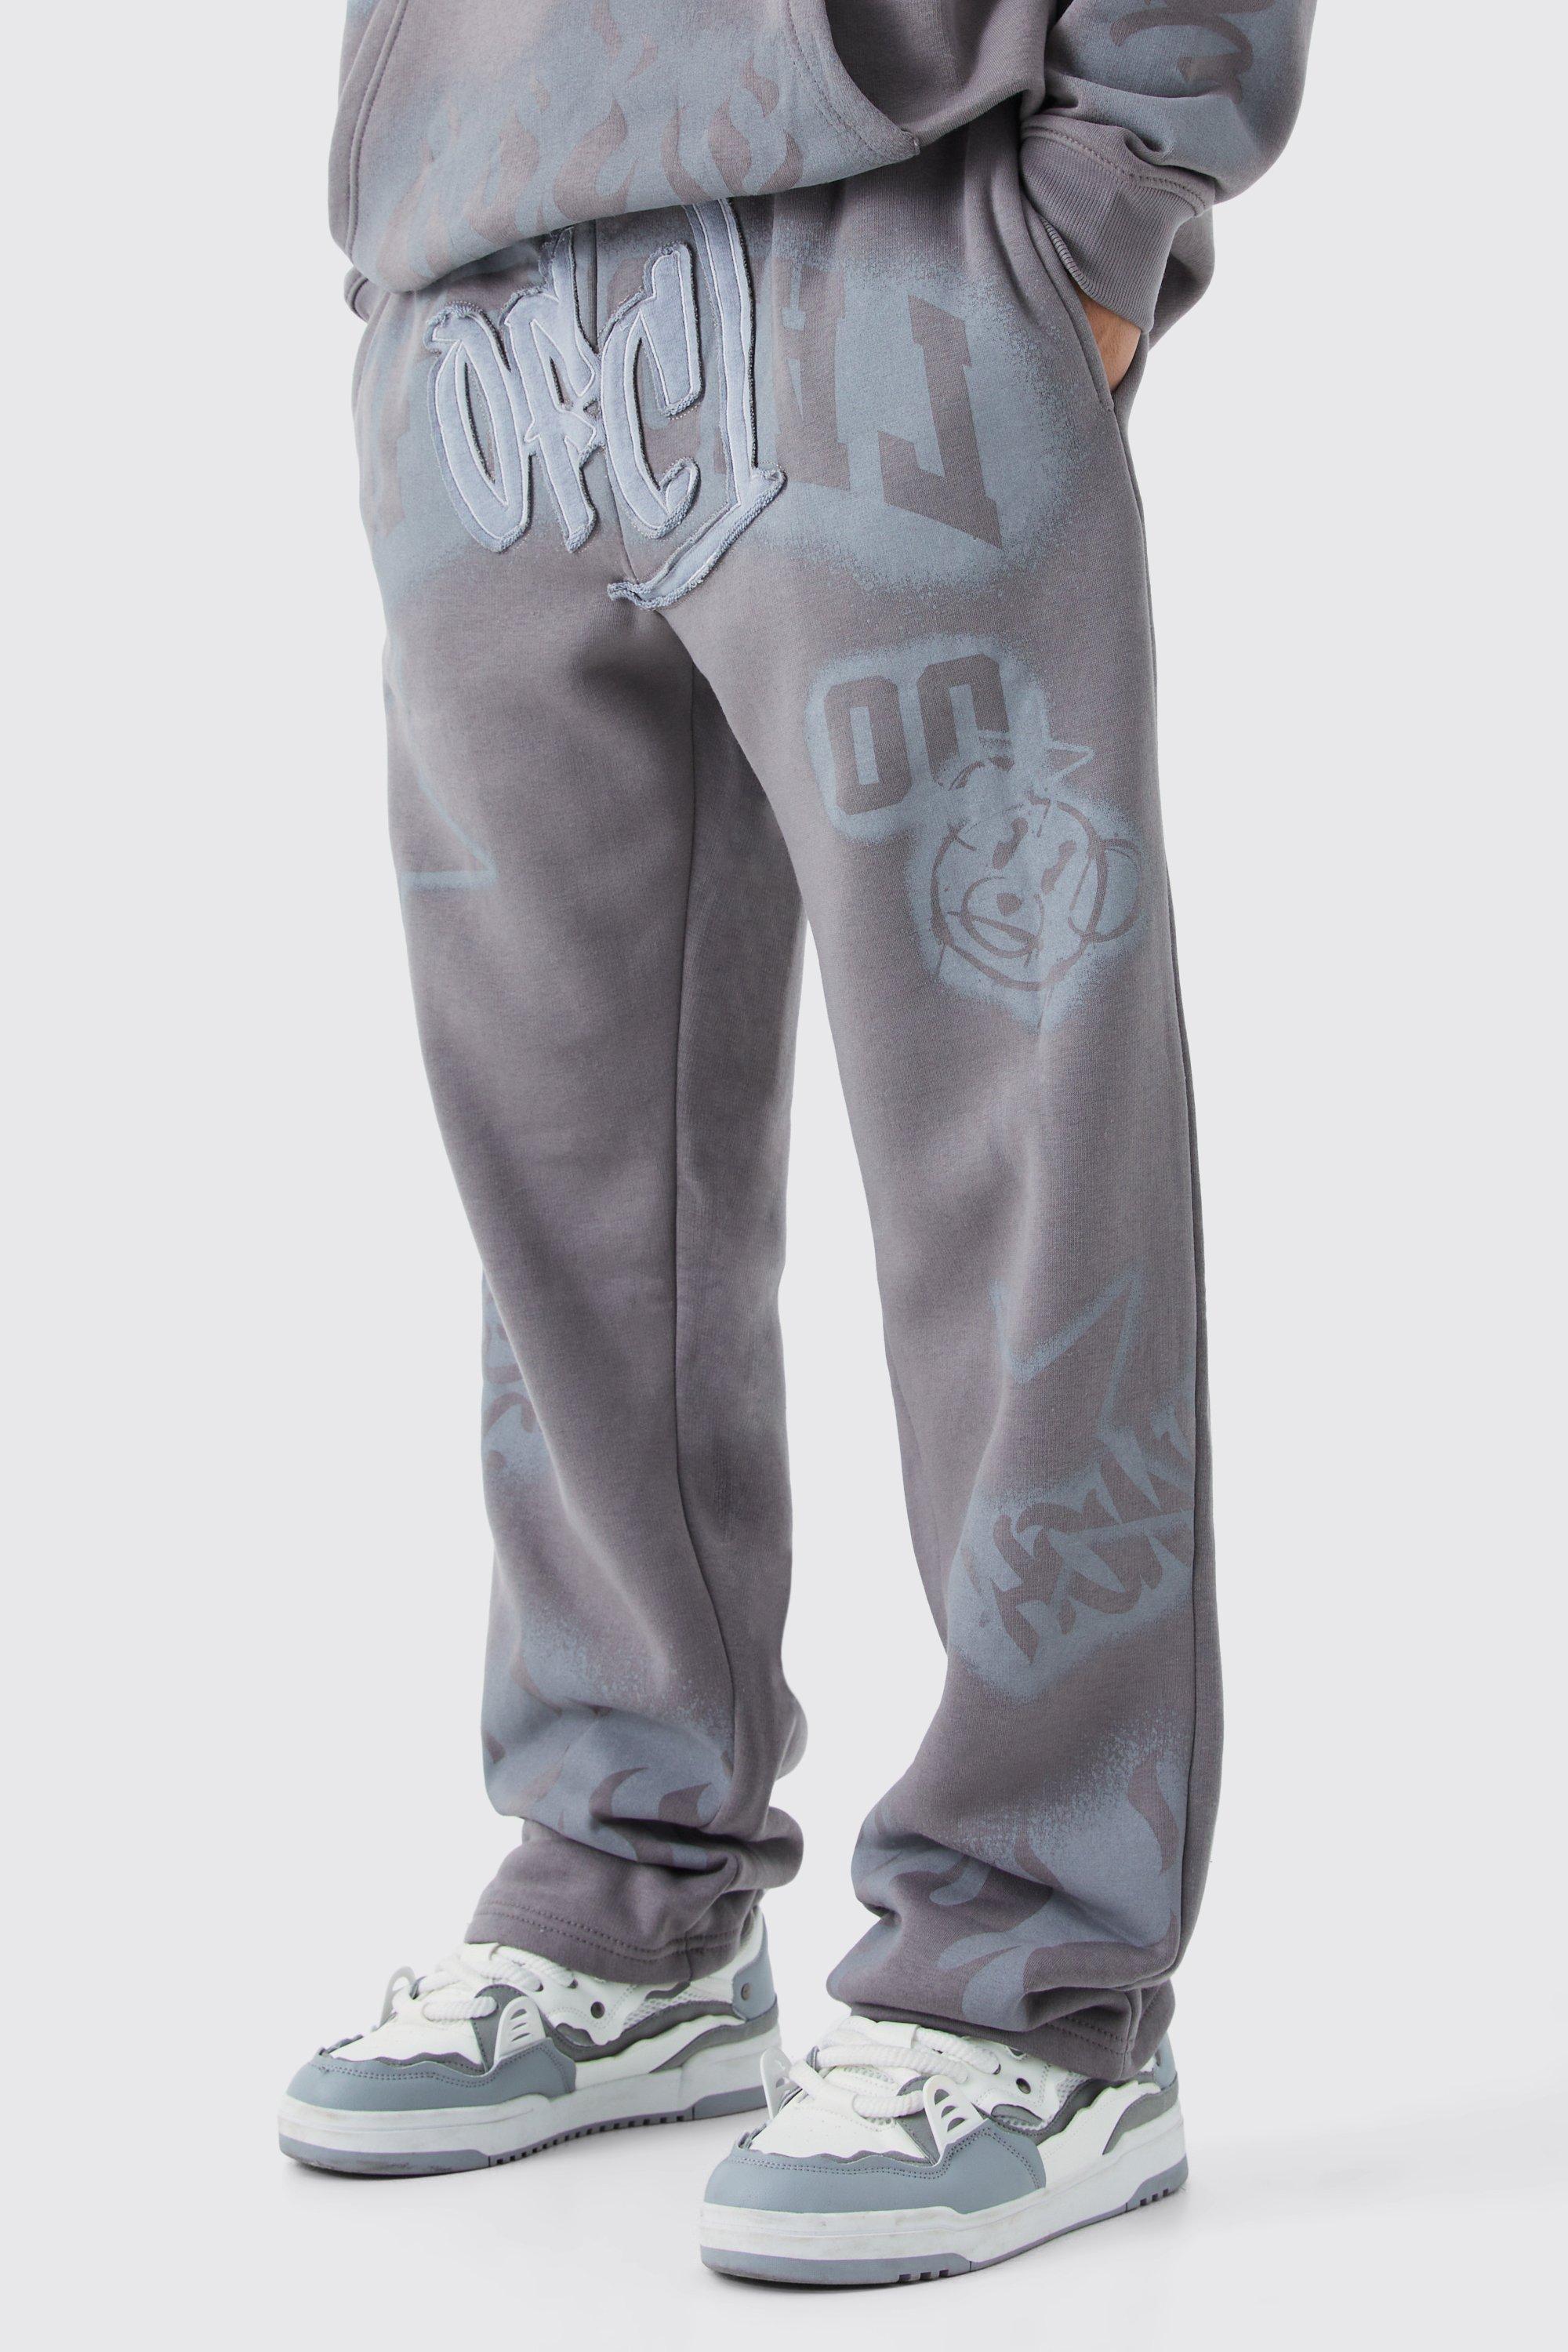 Image of Pantaloni tuta rilassati con applique stile Graffiti, Grigio